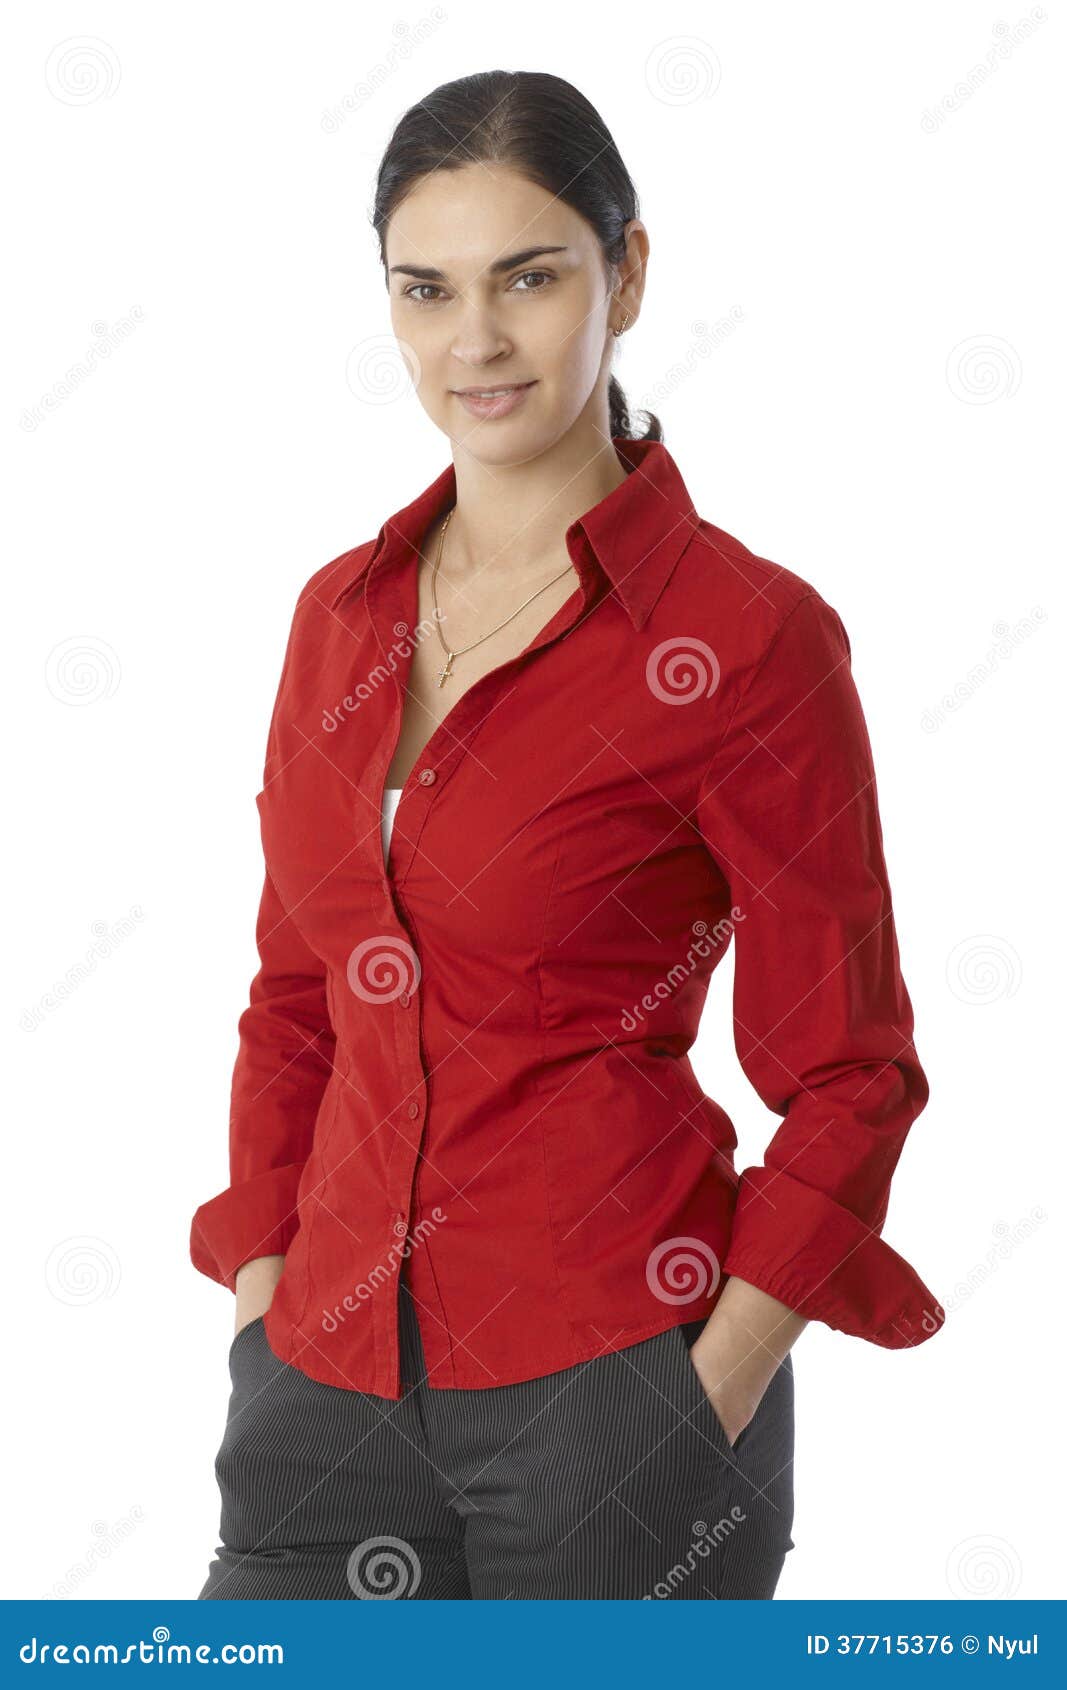 Retrato De La Mujer Joven Casual En Blusa Roja Foto de archivo - Imagen coleta, americano: 37715376